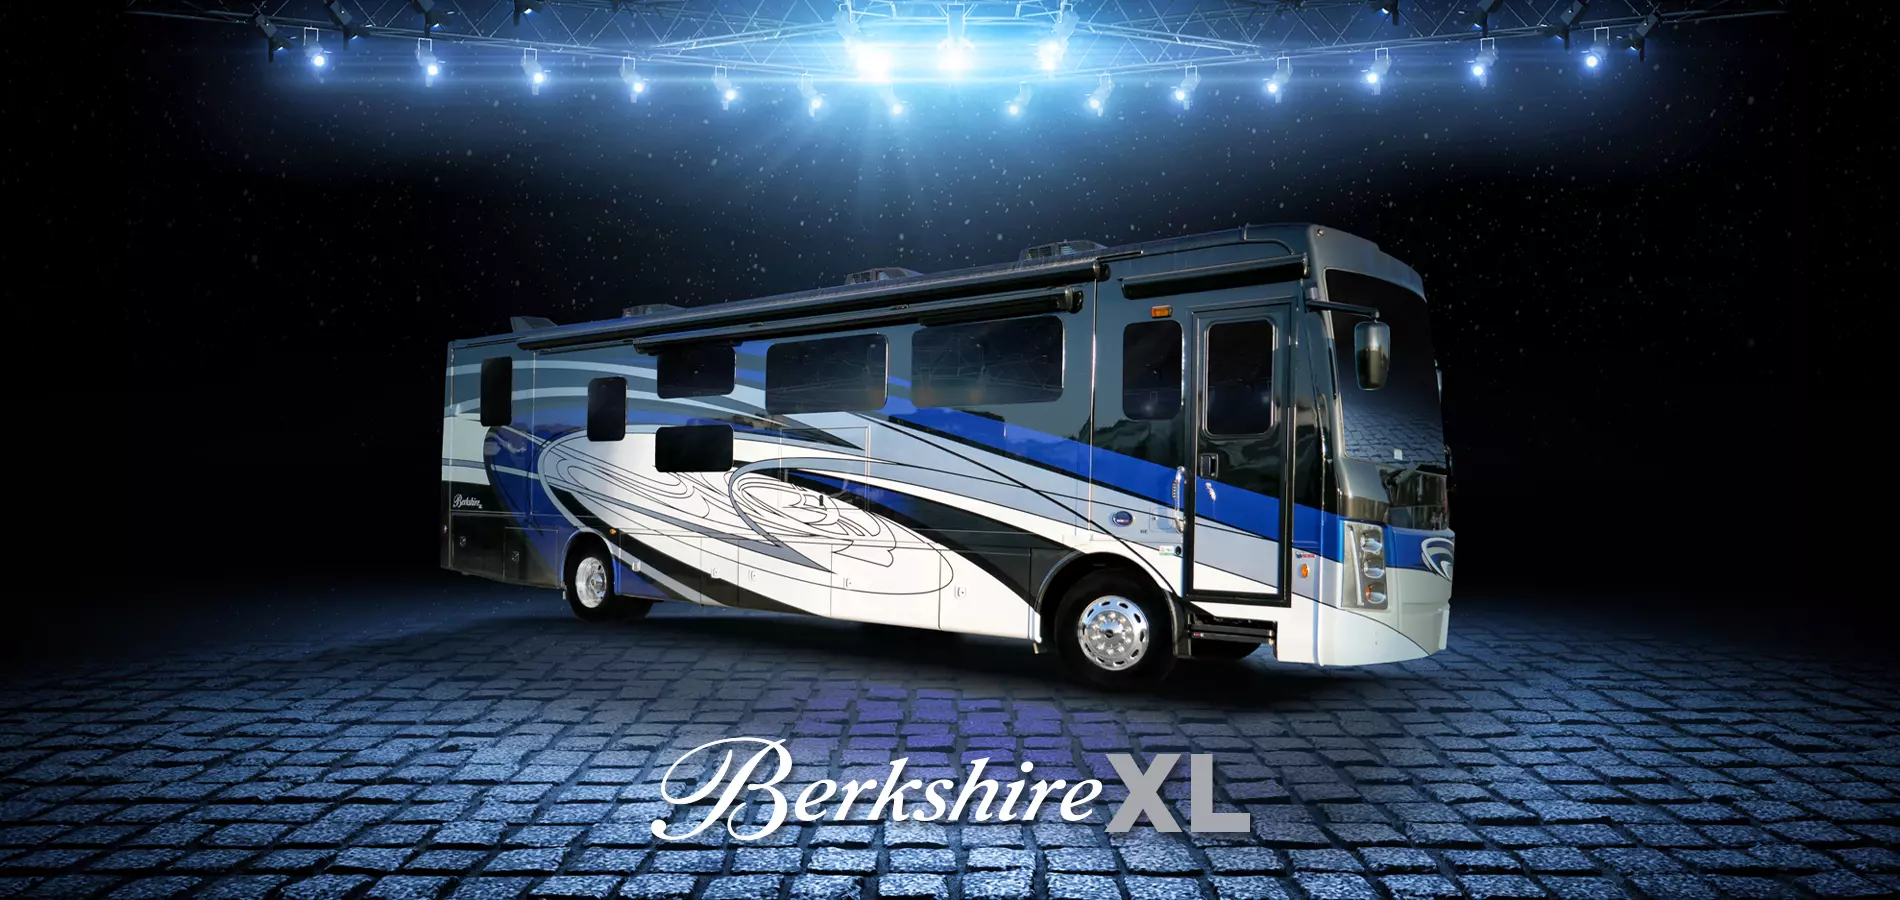 Berkshire XL RVs